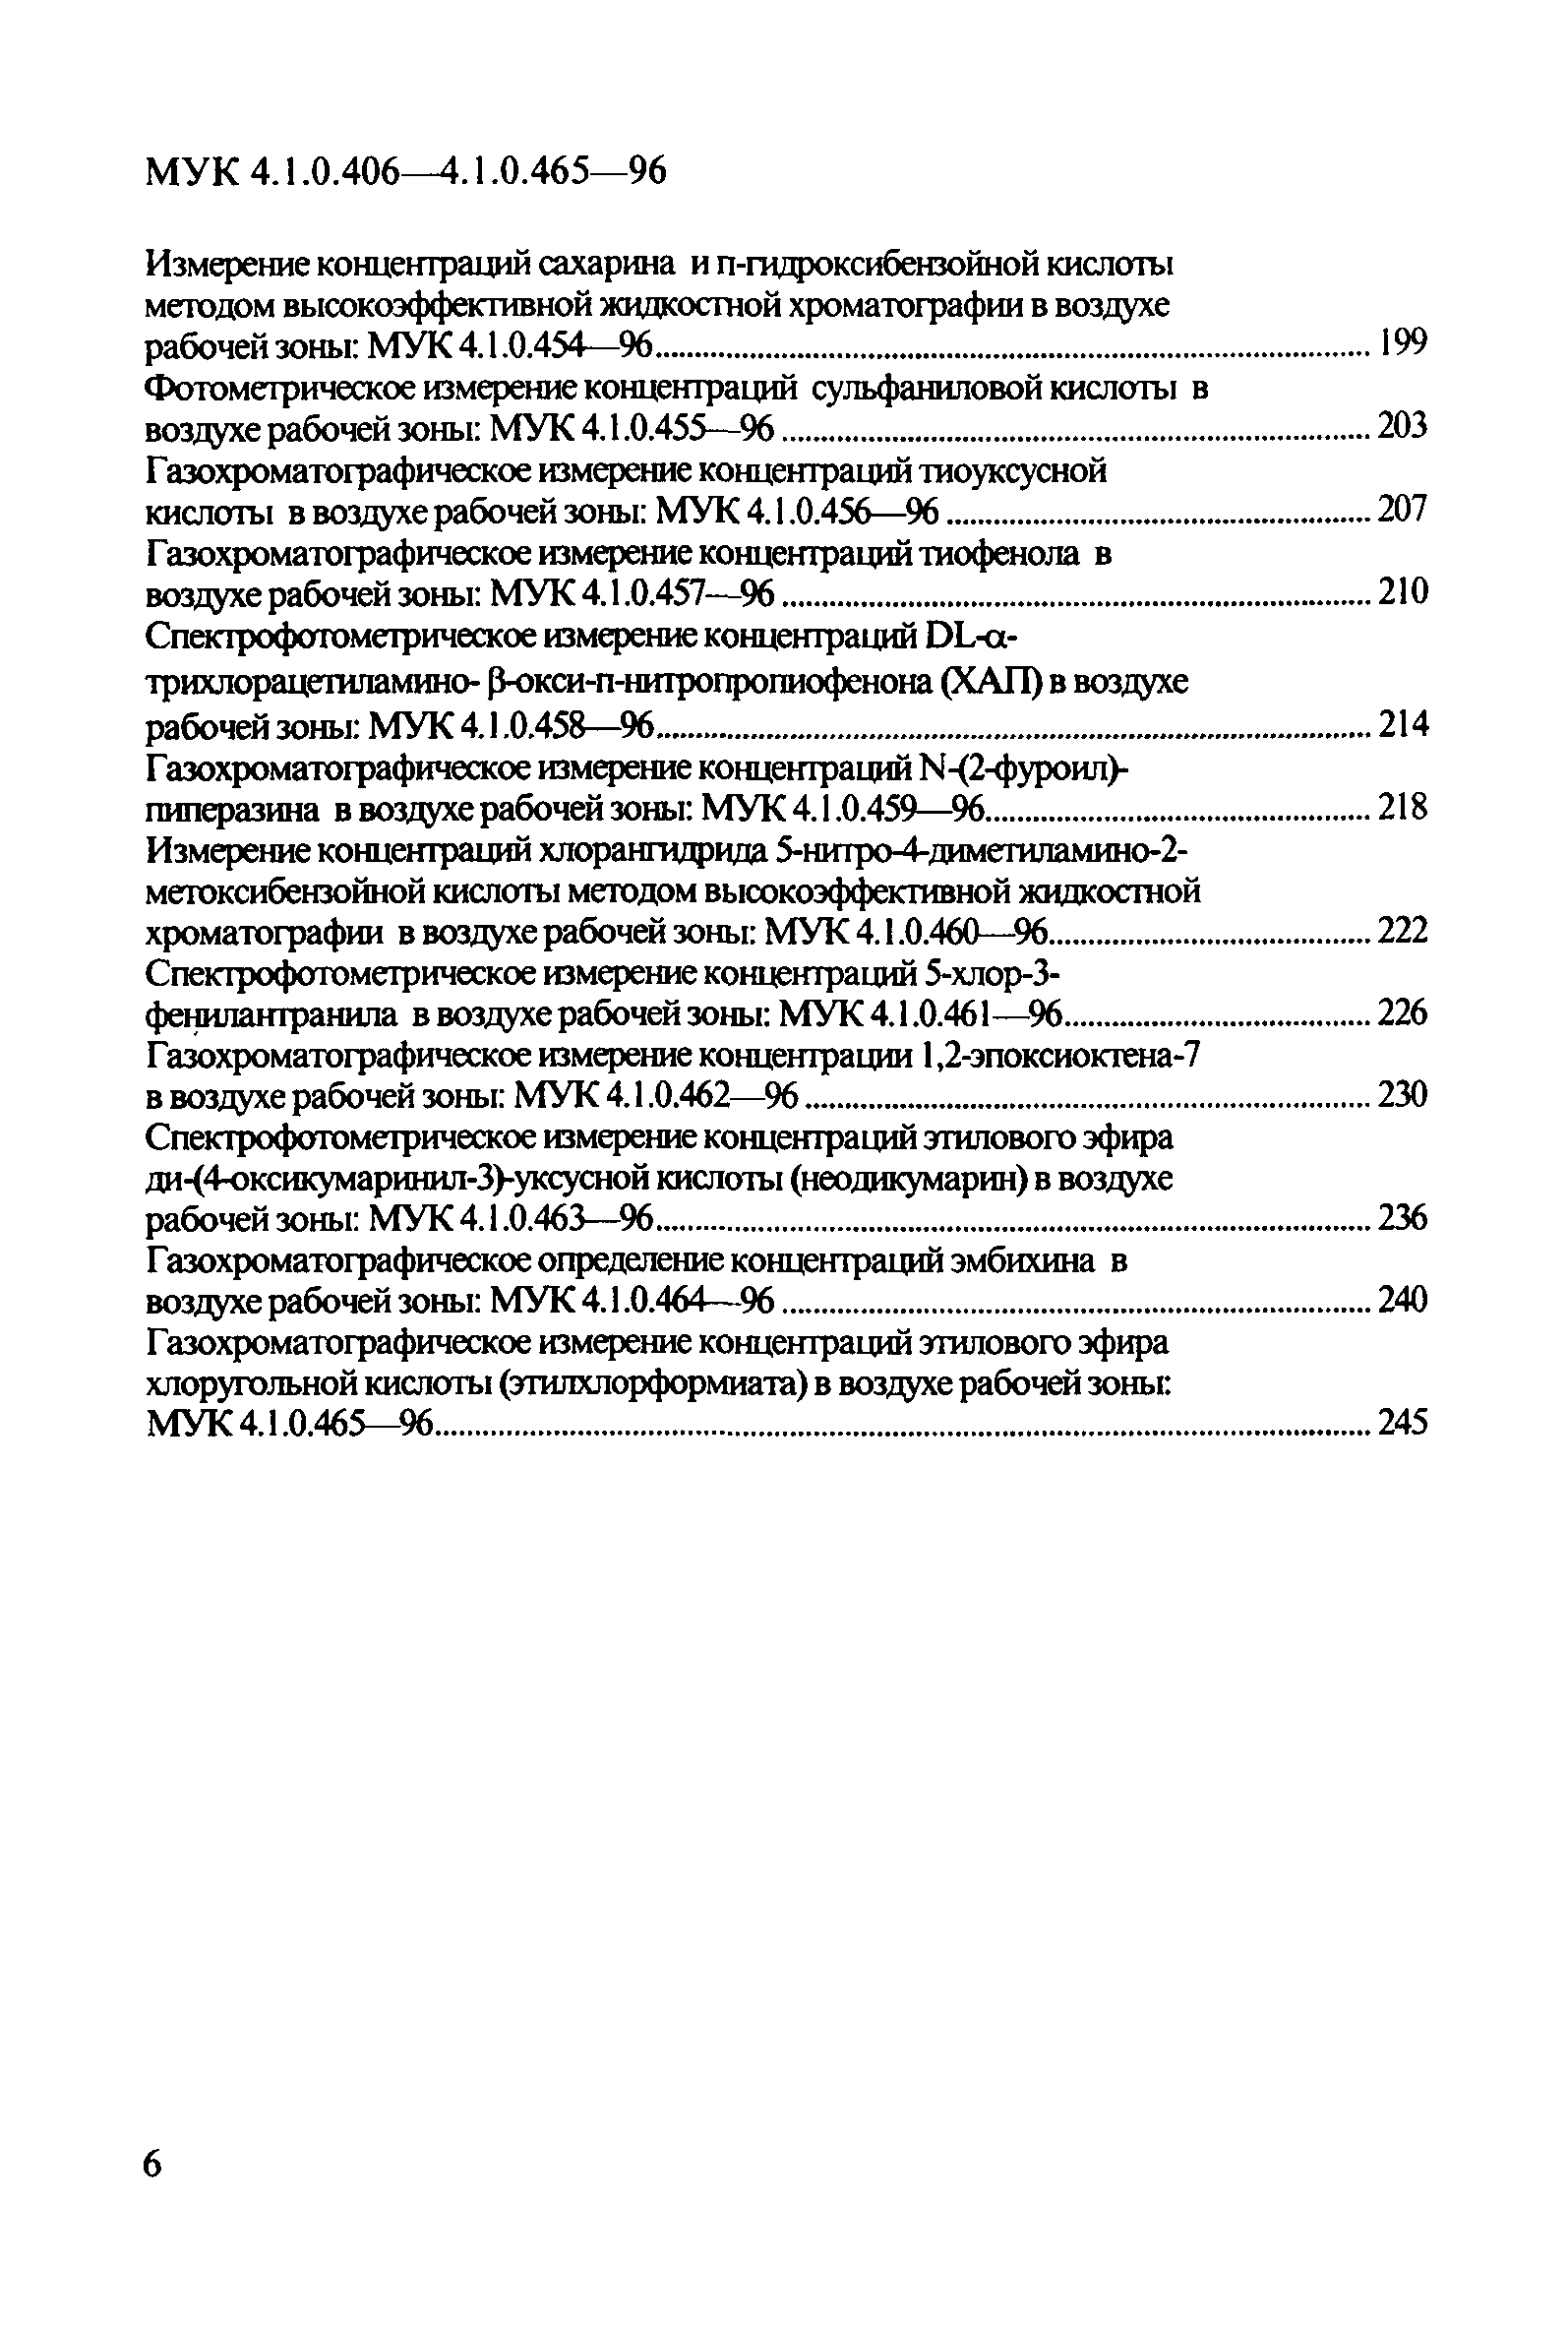 МУК 4.1.0.413-96